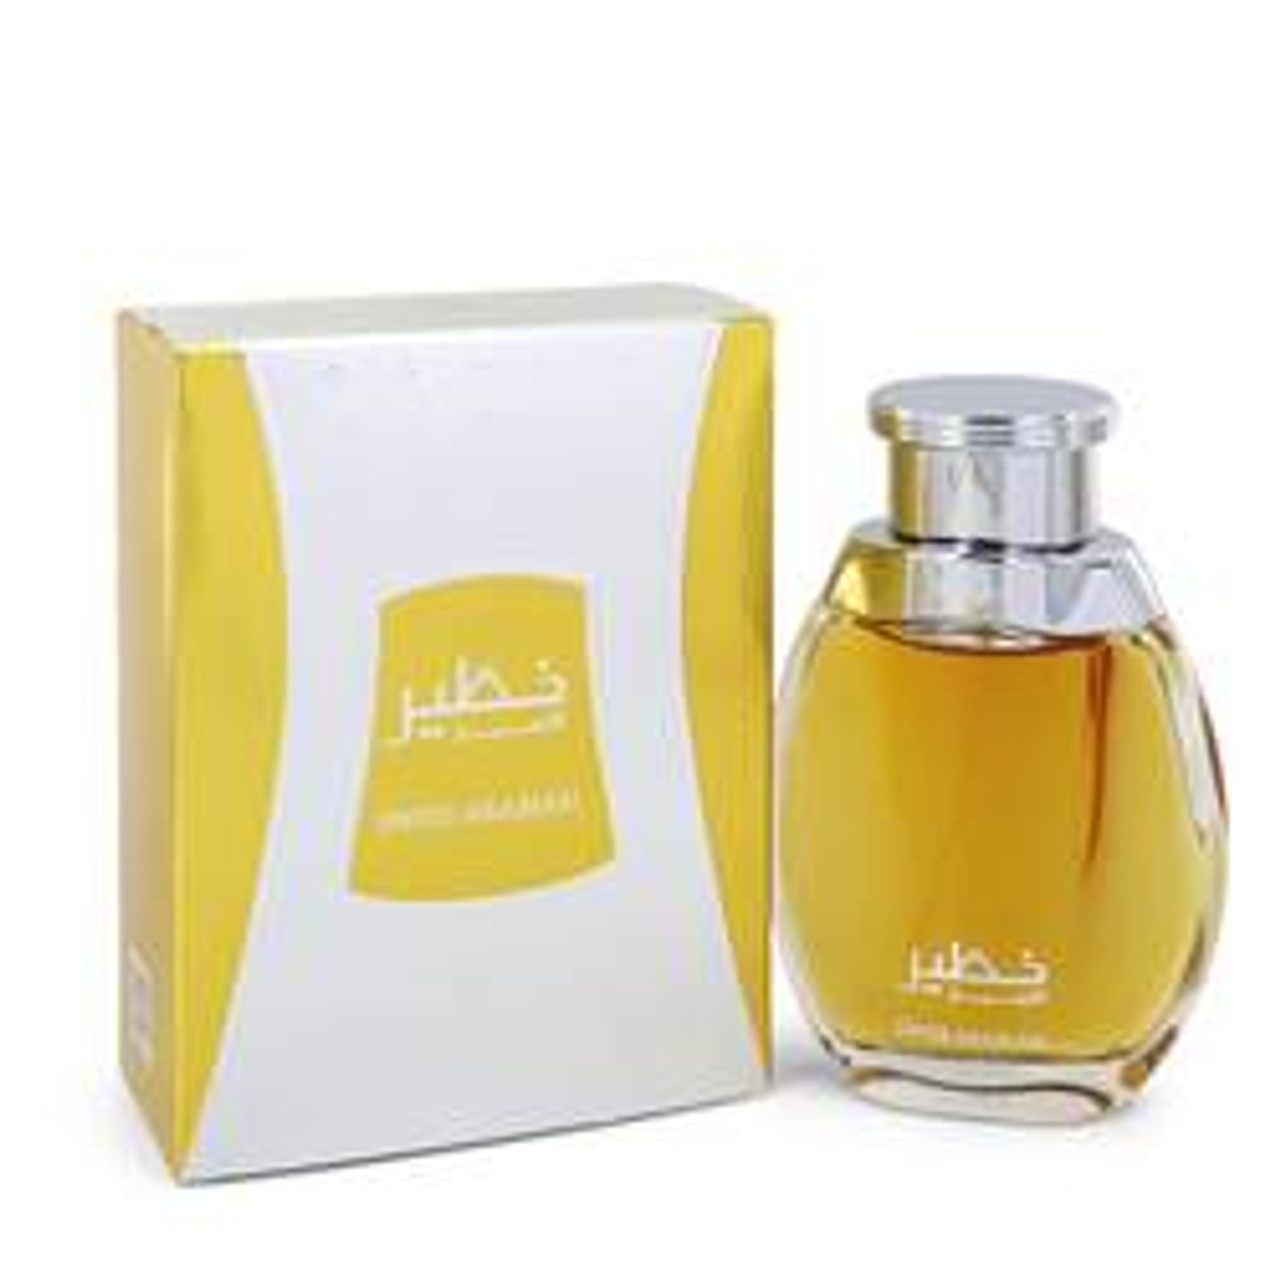 Swiss Arabian Khateer Cologne By Swiss Arabian Eau De Parfum Spray 3.4 oz for Men - [From 92.00 - Choose pk Qty ] - *Ships from Miami